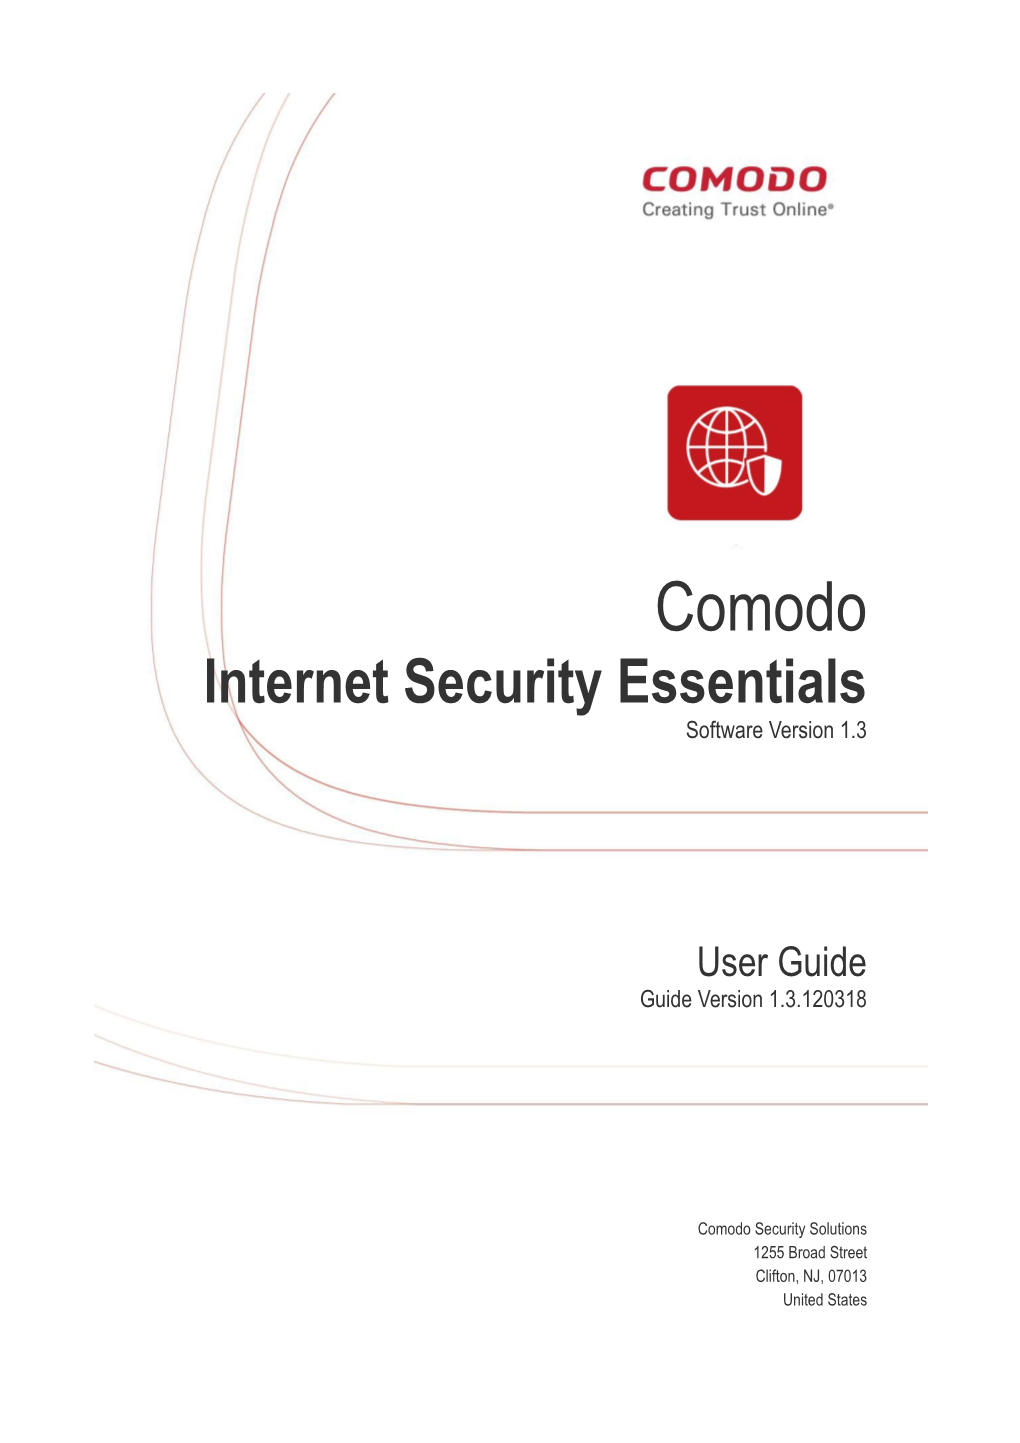 Comodo Internet Security Essentials User Guide | © 2018 Comodo Security Solutions Inc